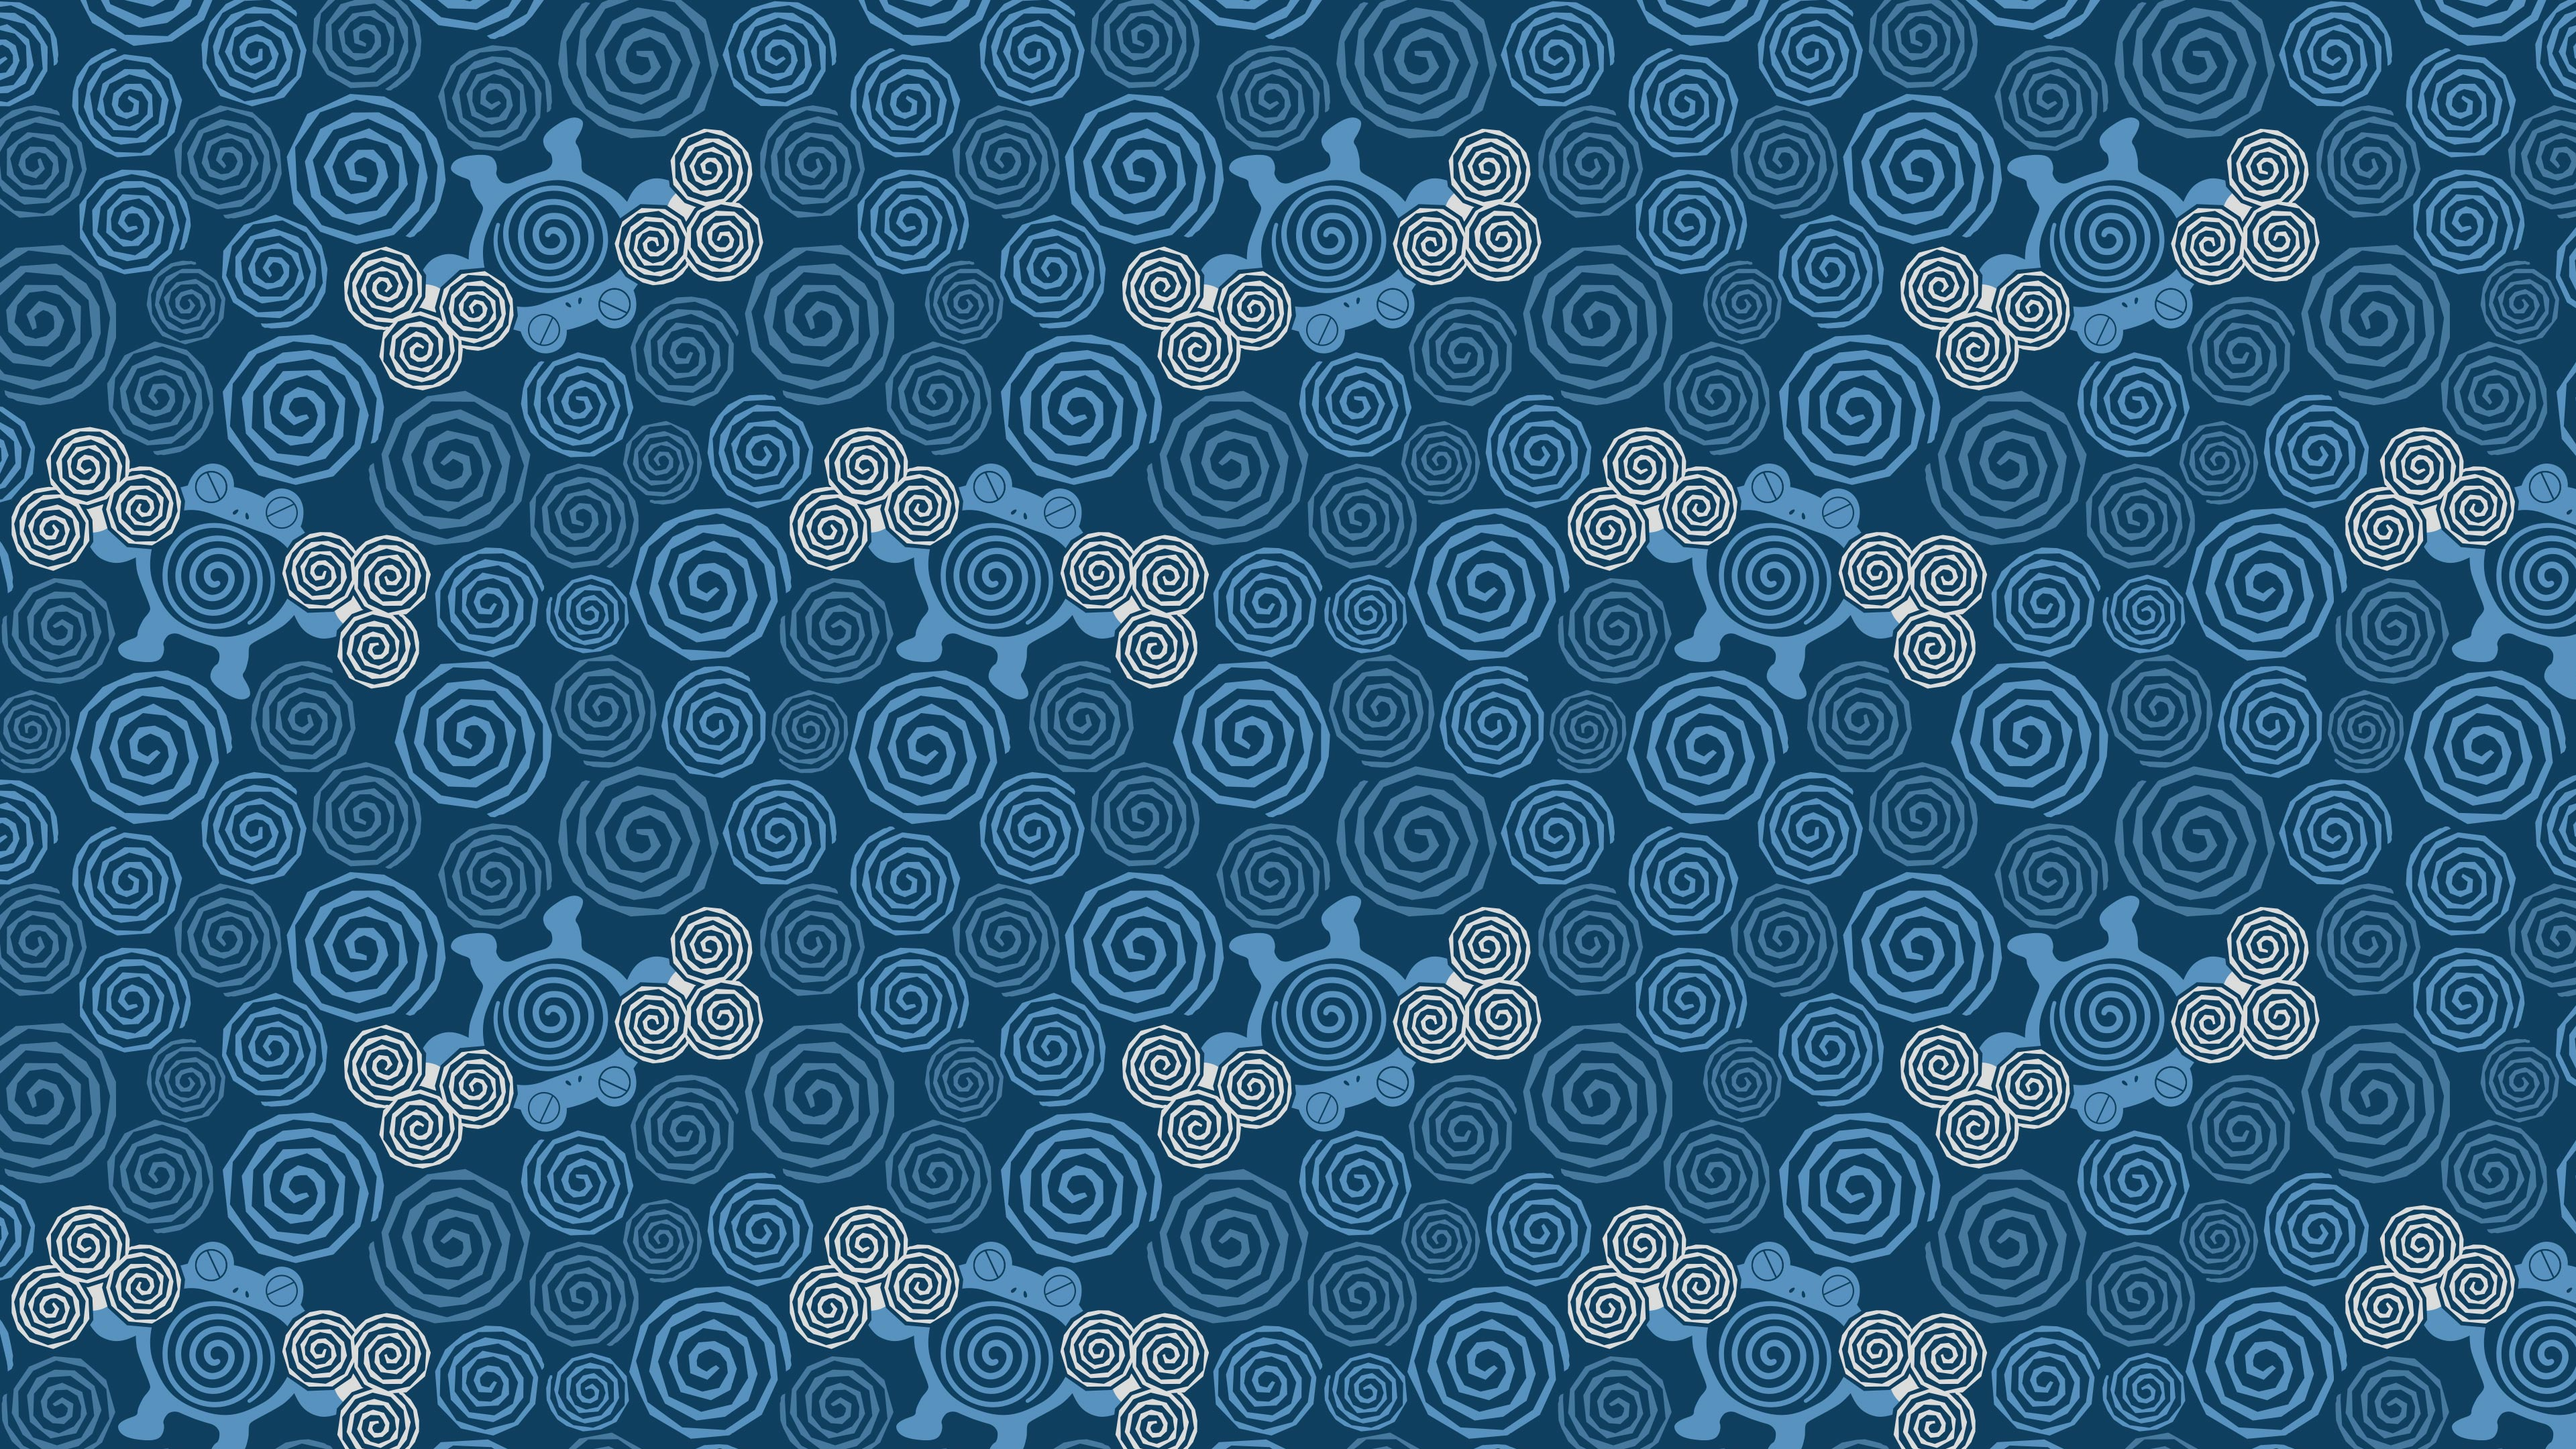 Pattern Swirls Artwork Blue Simple Background Pokemon Wallpaper ...